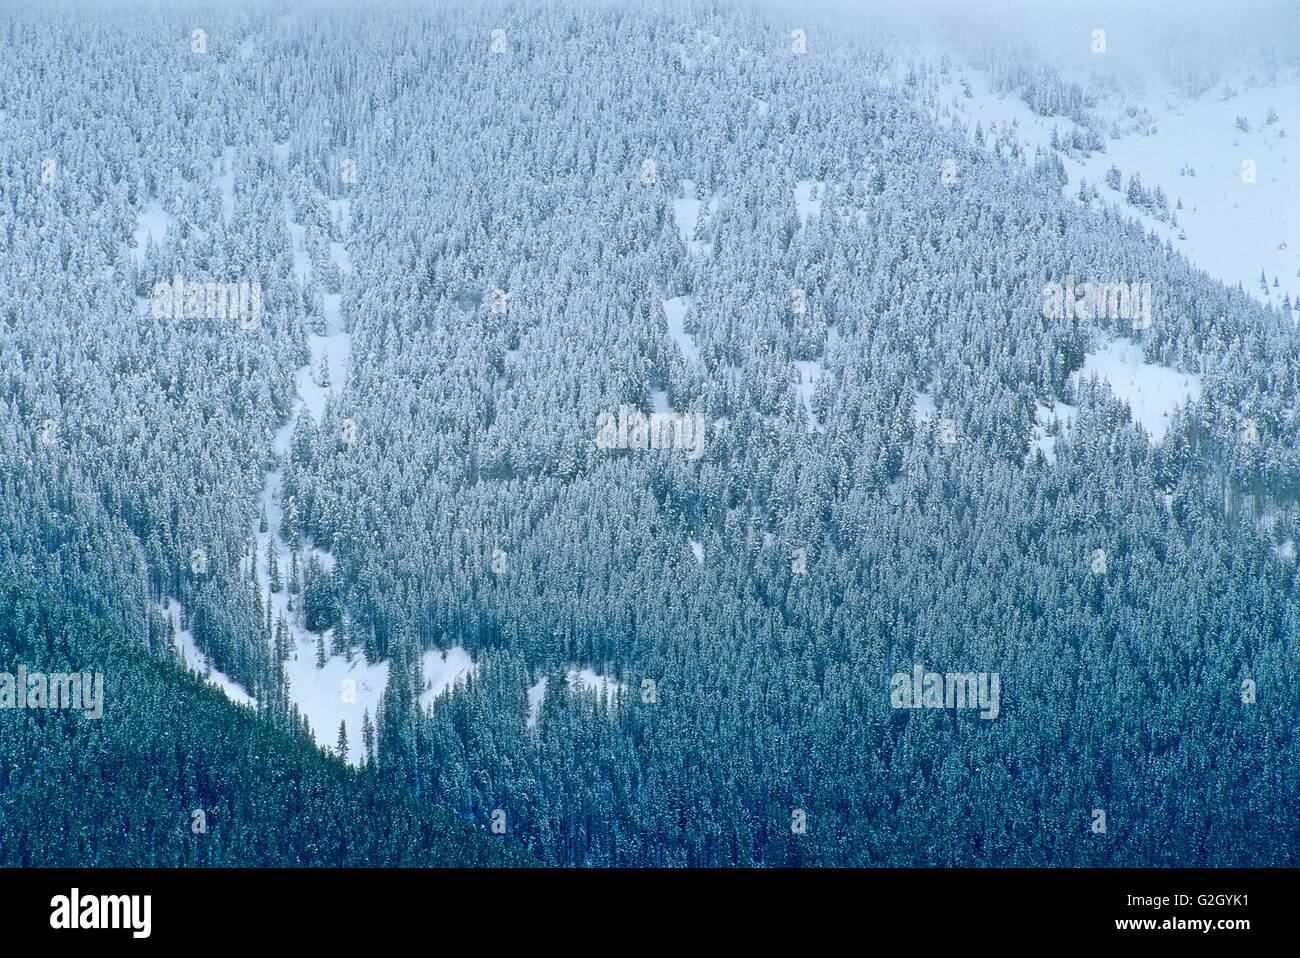 Berghang montane Wald im Schneesturm Kootenay Nationalpark in British Columbia Kanada Stockfoto